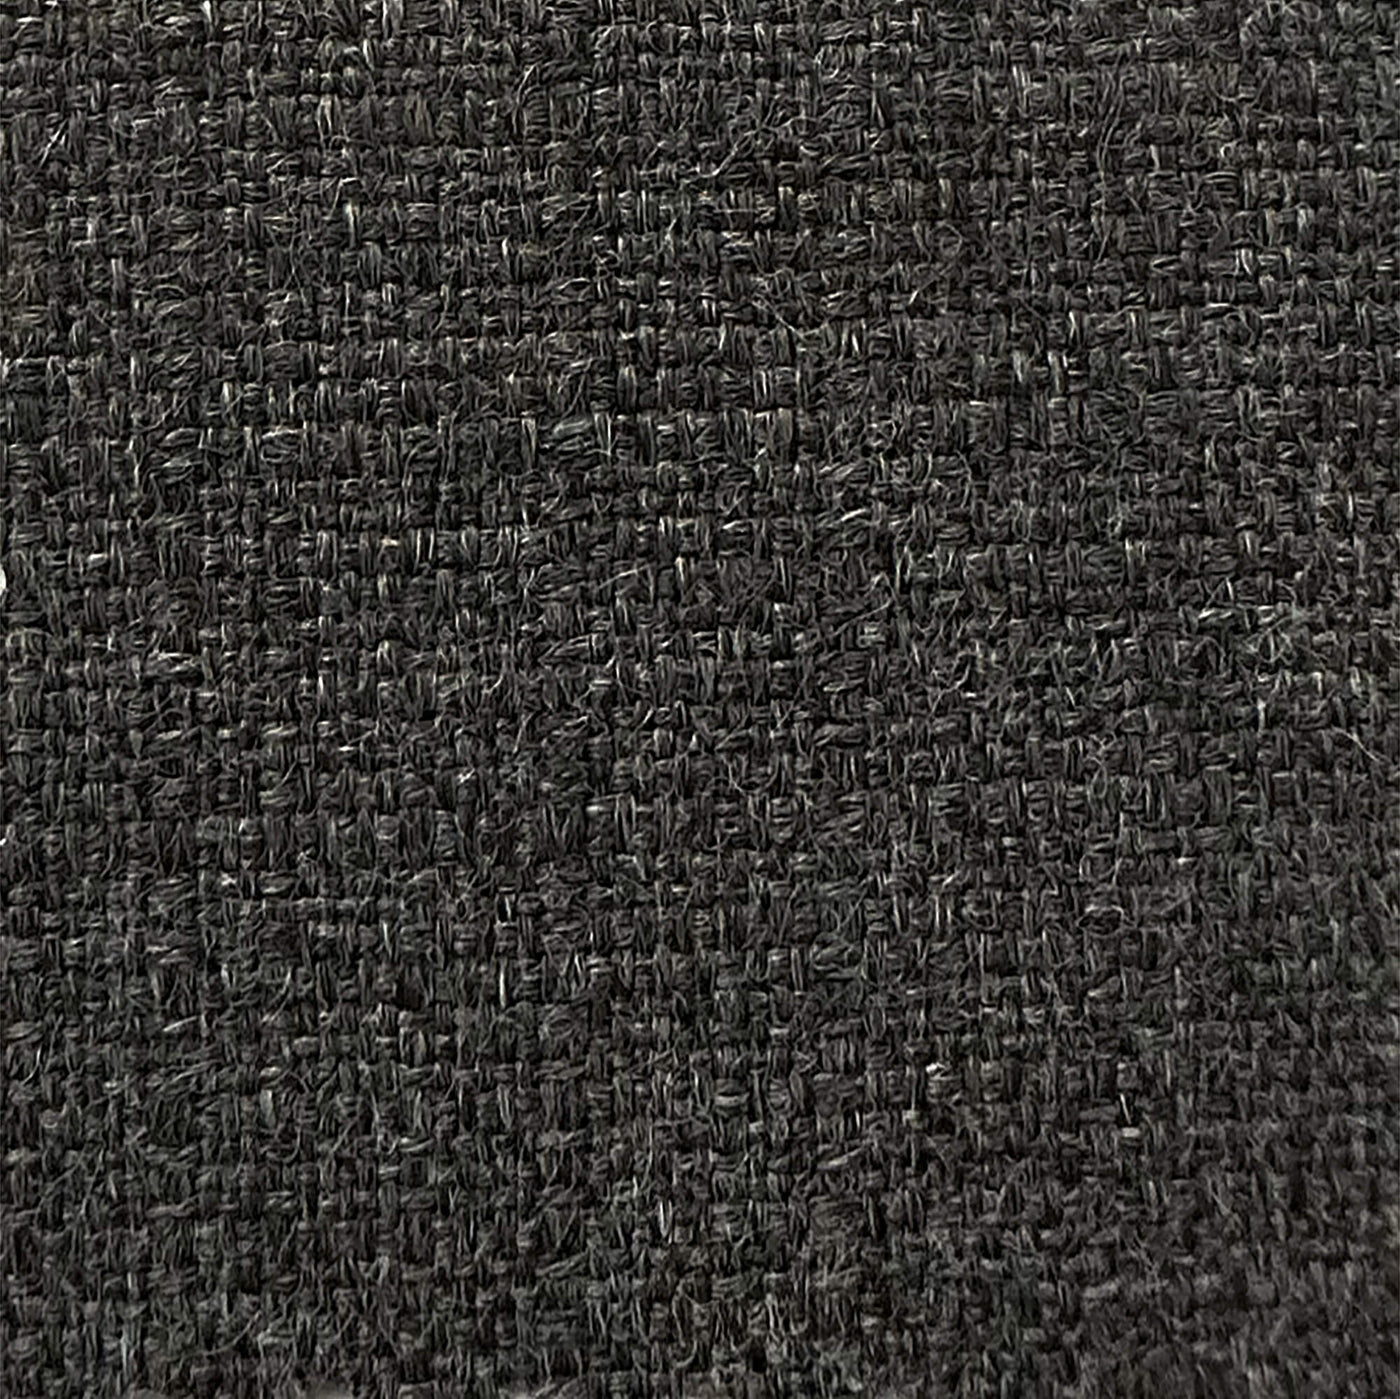 PENGI Outdoor Curtains Waterproof - Linen Dark Gray